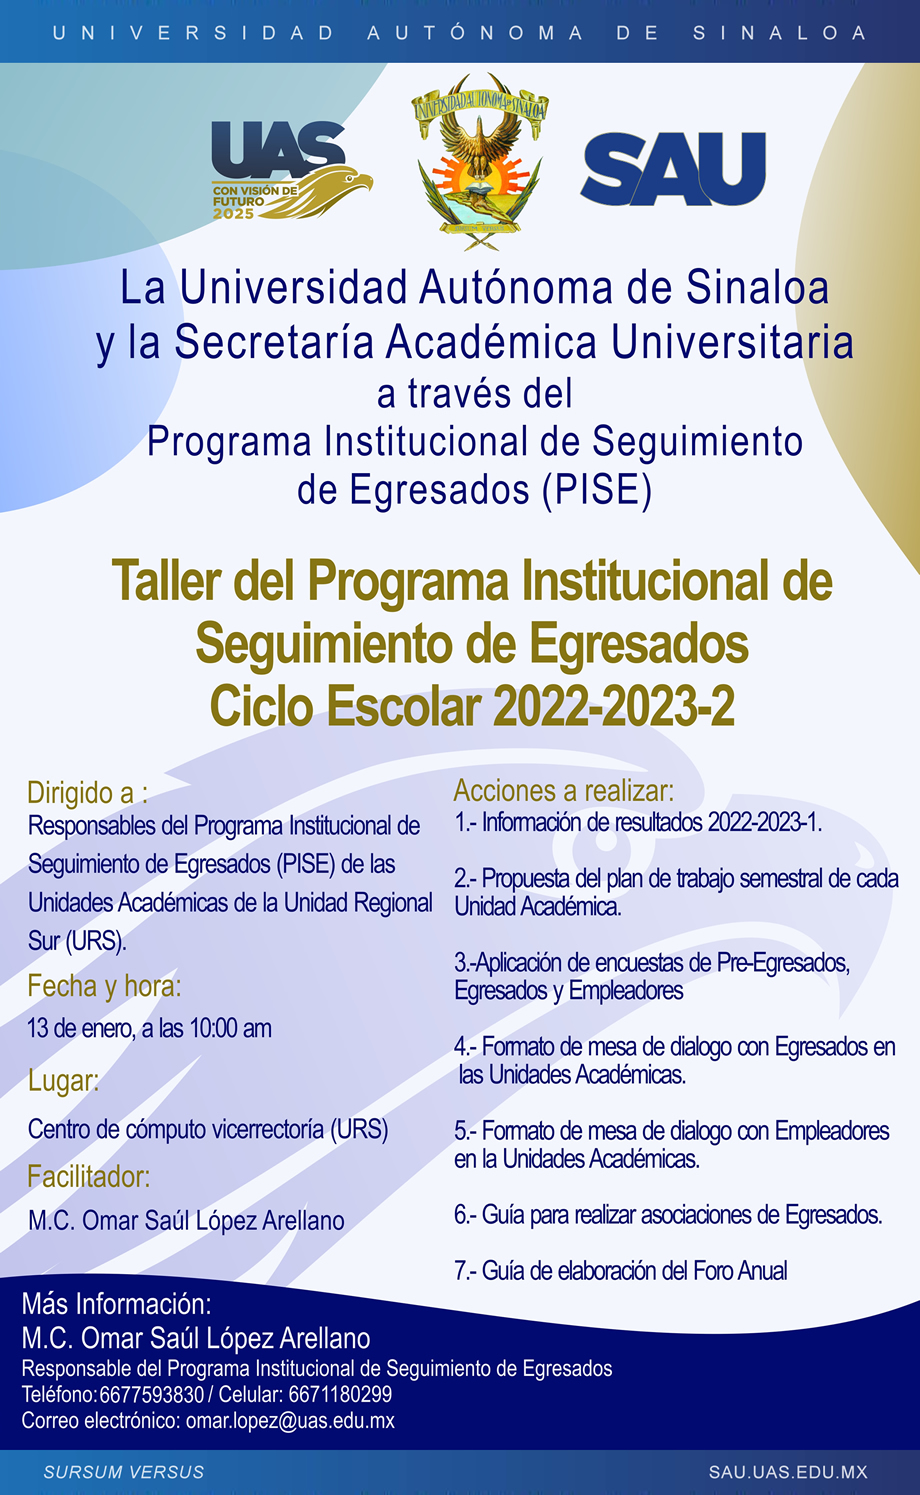 Taller del Programa Institucional de Seguimiento de Egresados, Unidad Regional Sur, Ciclo Escolar 2022-2023-2